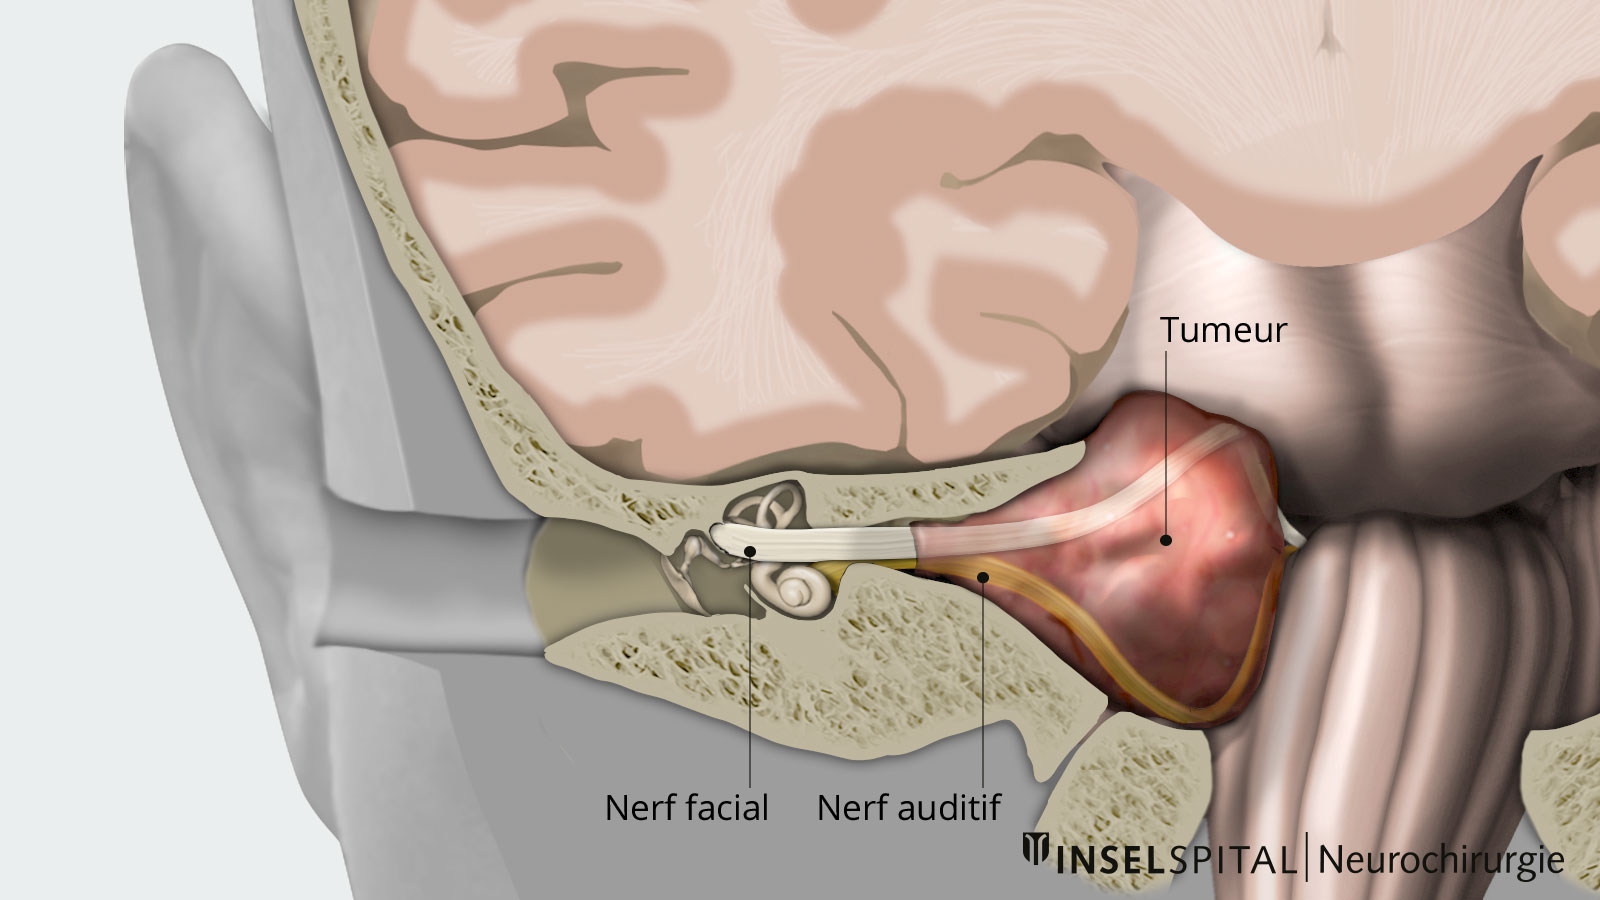 Vue d'ensemble de l'oreille interne avec les nerfs crâniens et la tumeur